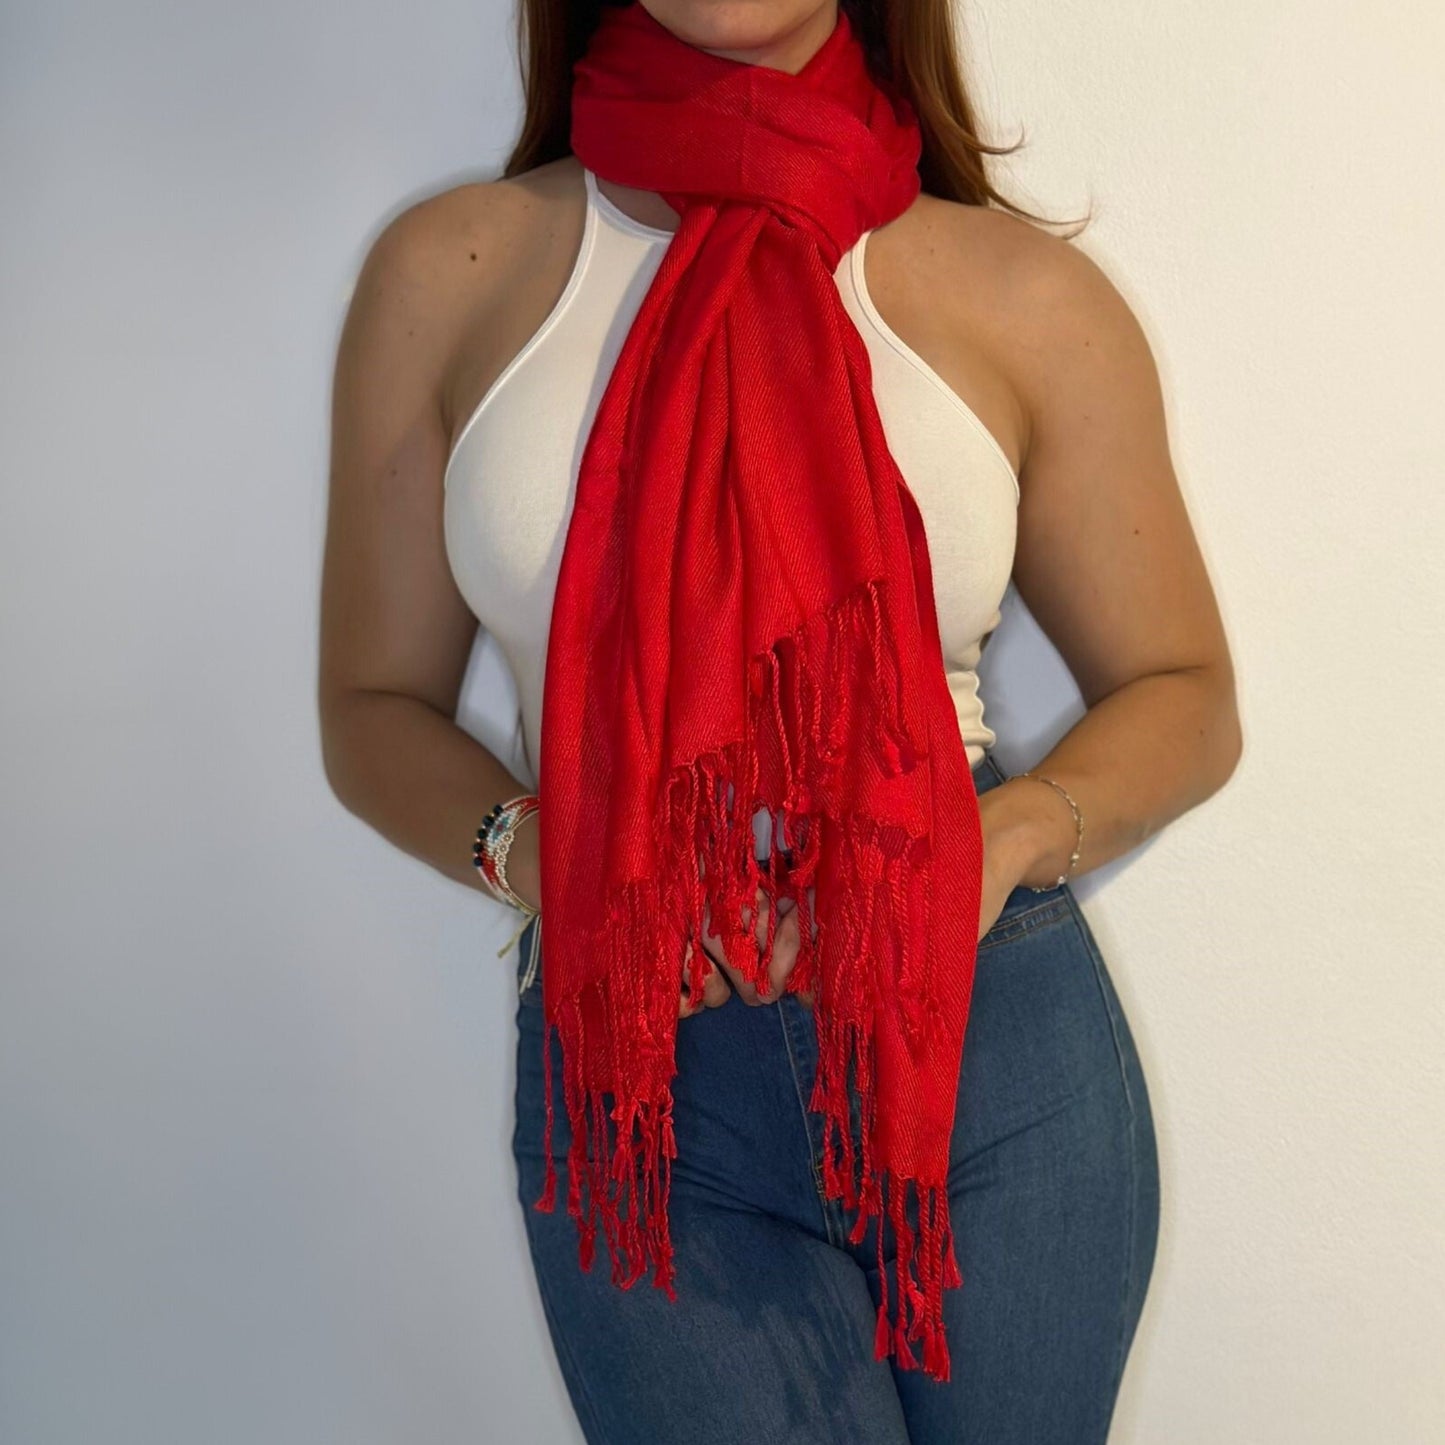 Mujer en Jeans Top y Pashmina Shawl Roja Anudada en en Cuello/Pololena & Co.